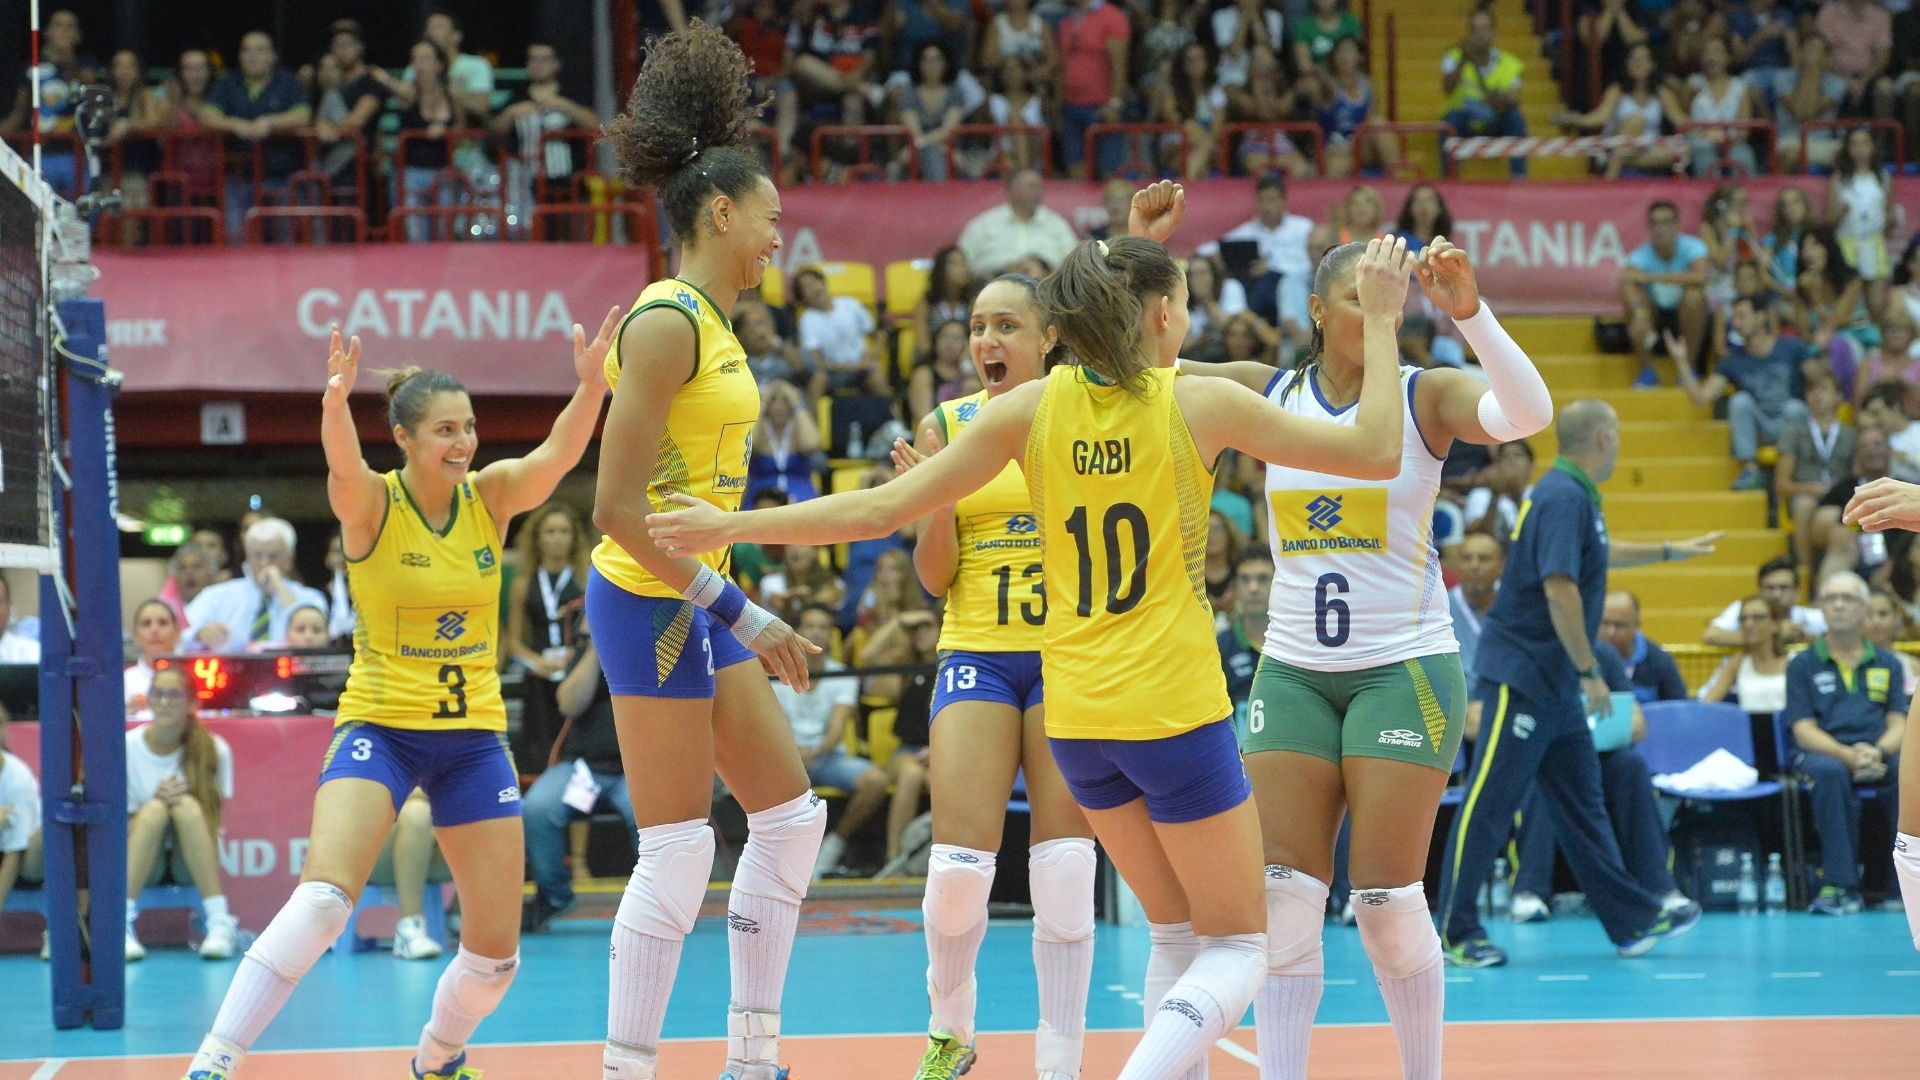 18.jul.2015 - Brasil venceu a Itália em Catania na última partida antes da fase final do Grand Prix de vôlei feminino